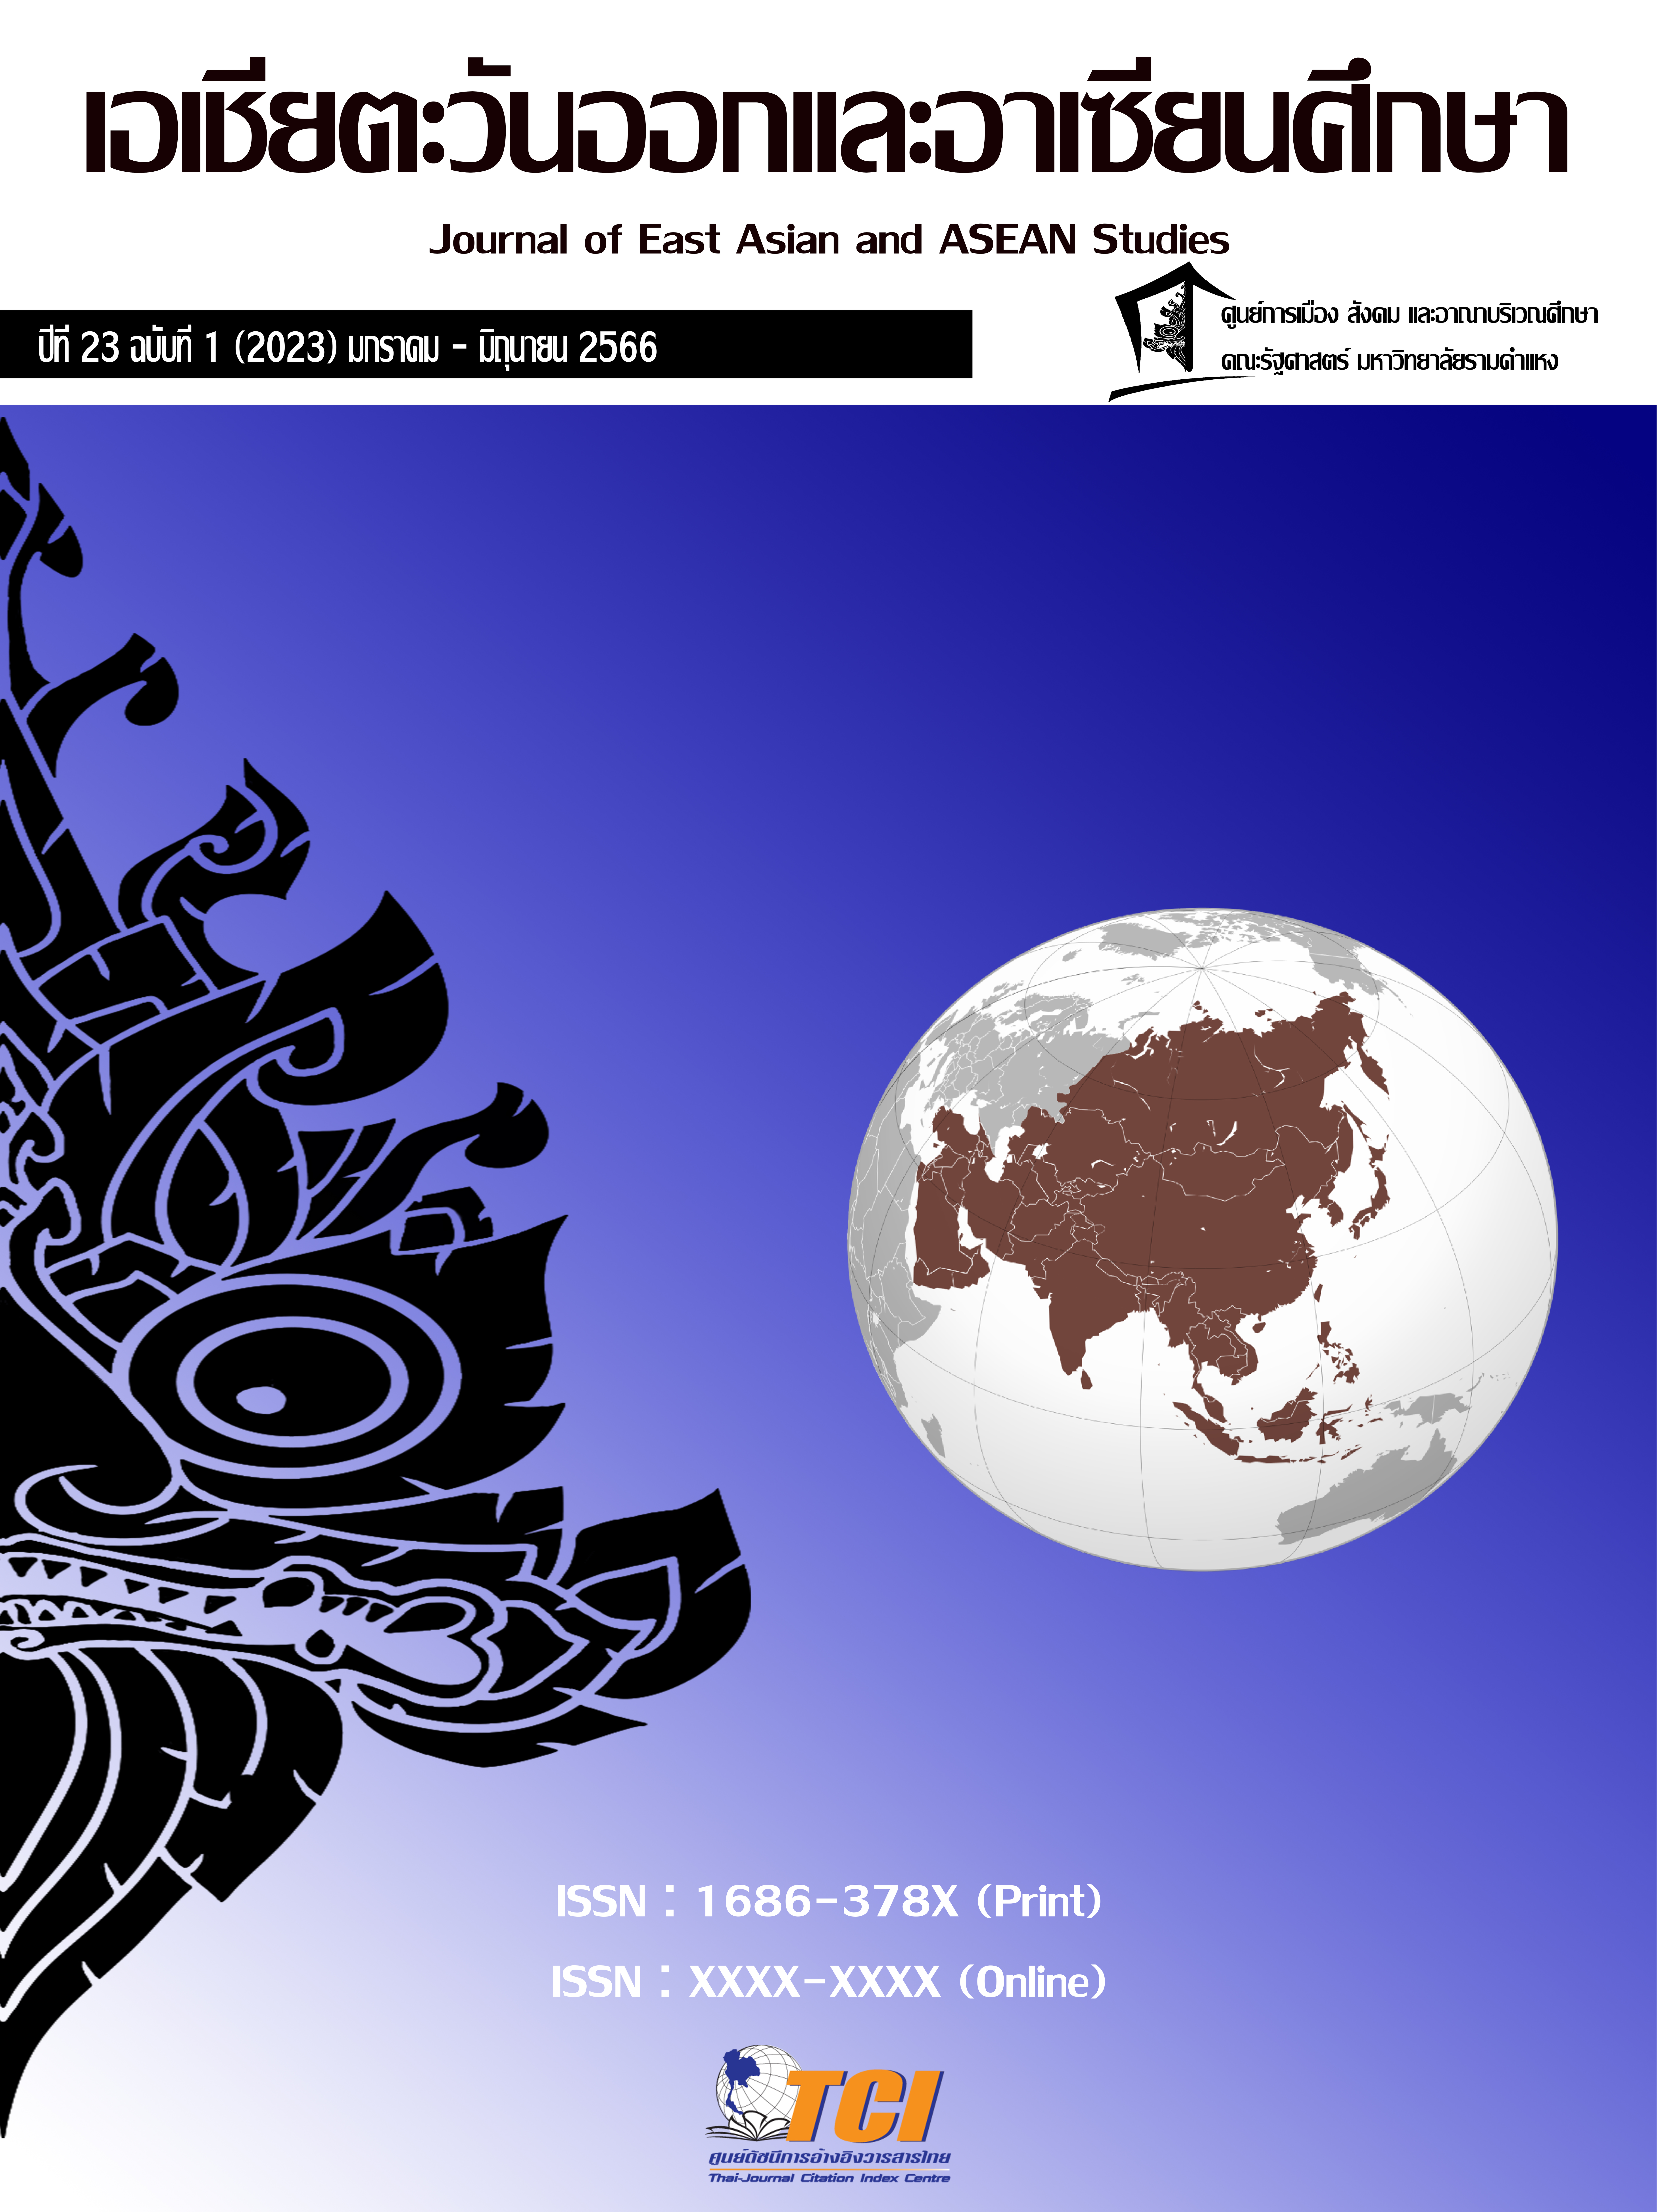 					ดู ปีที่ 23 ฉบับที่ 1 (2023): วารสารเอเชียตะวันออกและอาเซียนศึกษา
				